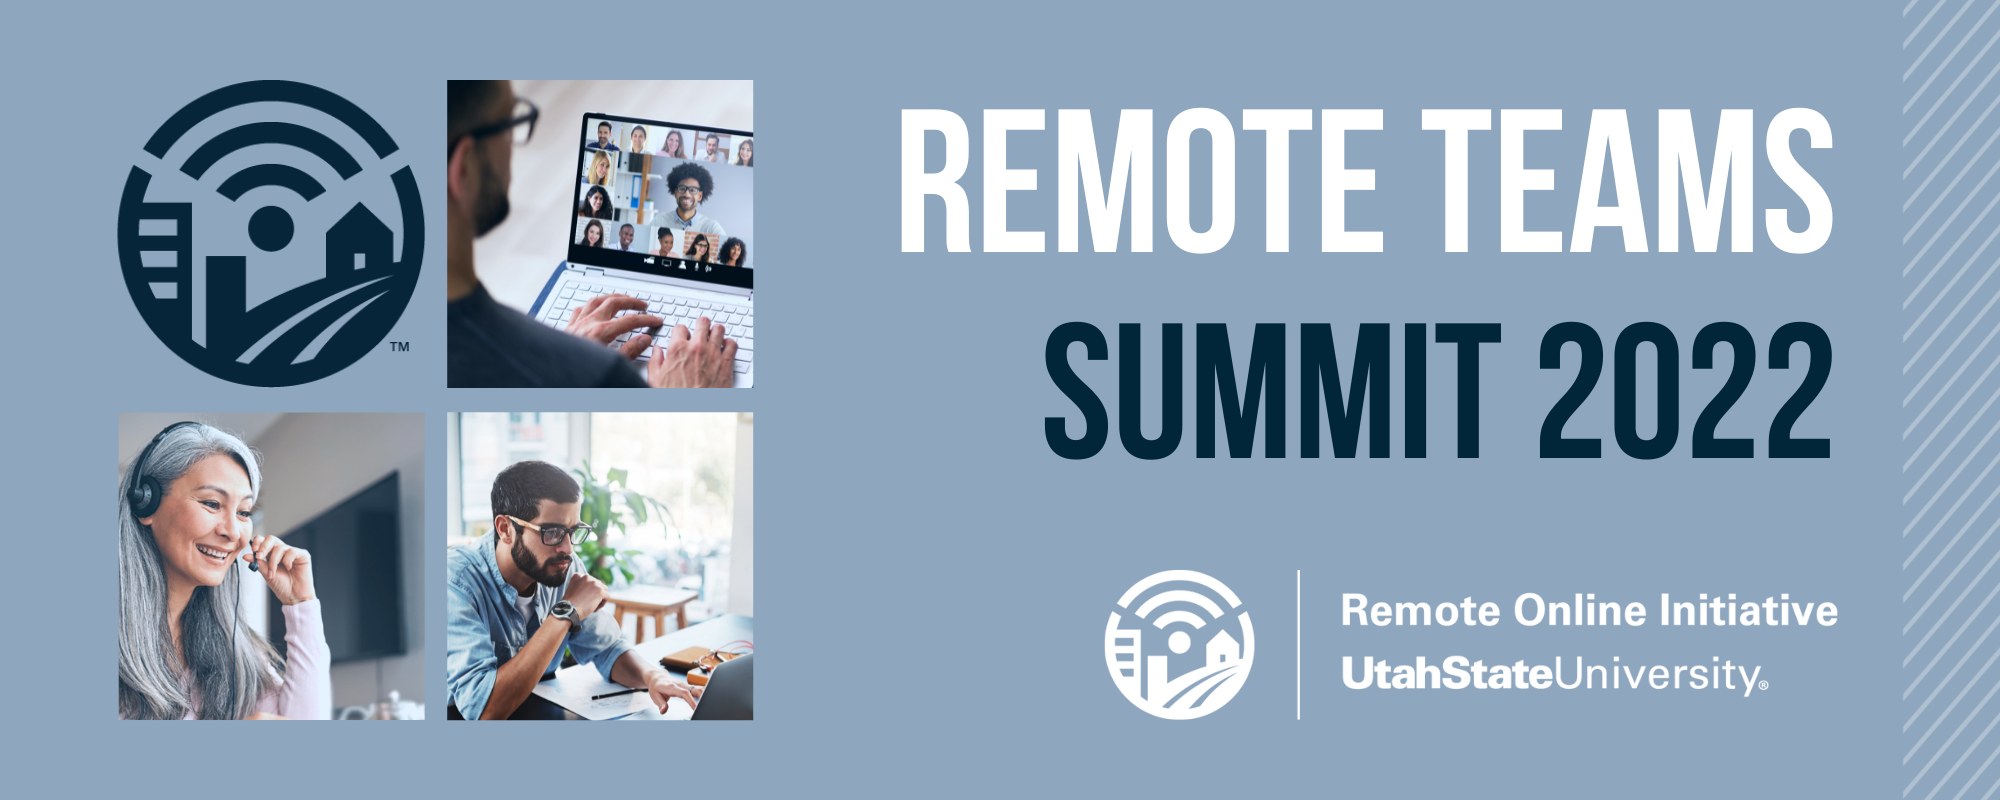 Remote Teams Summit 2022